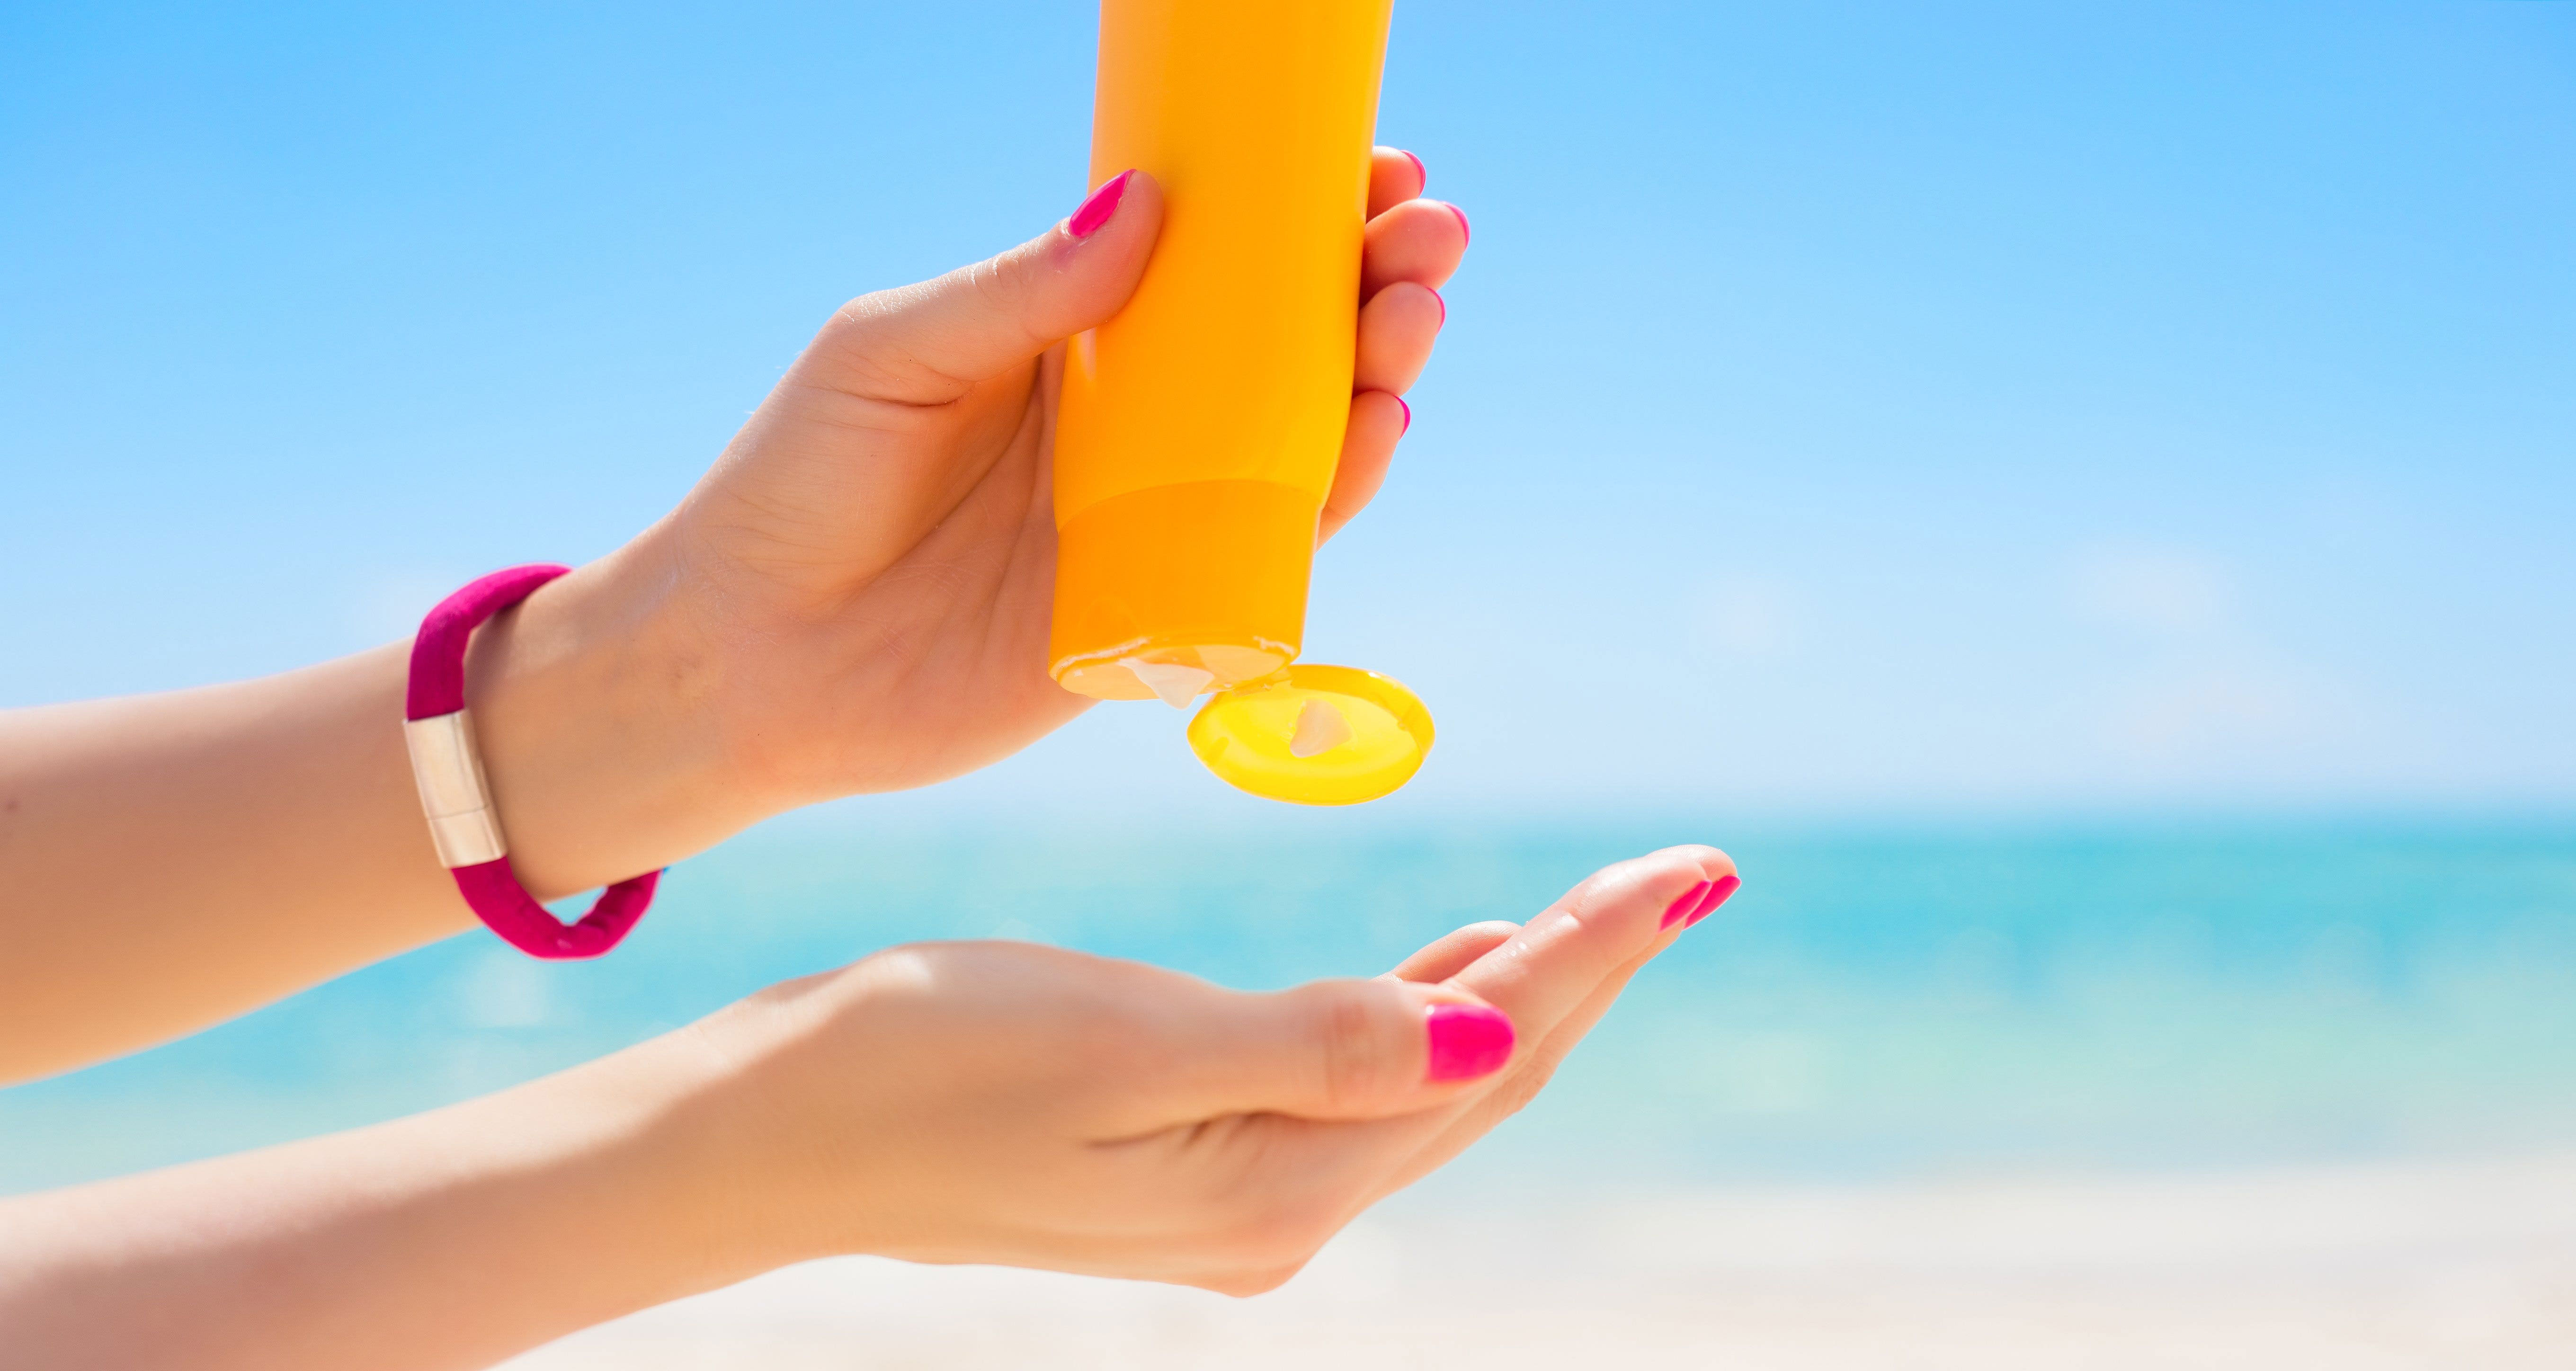 اشعه ی آفتاب چه ضرر هایی برای پوست دارد؟